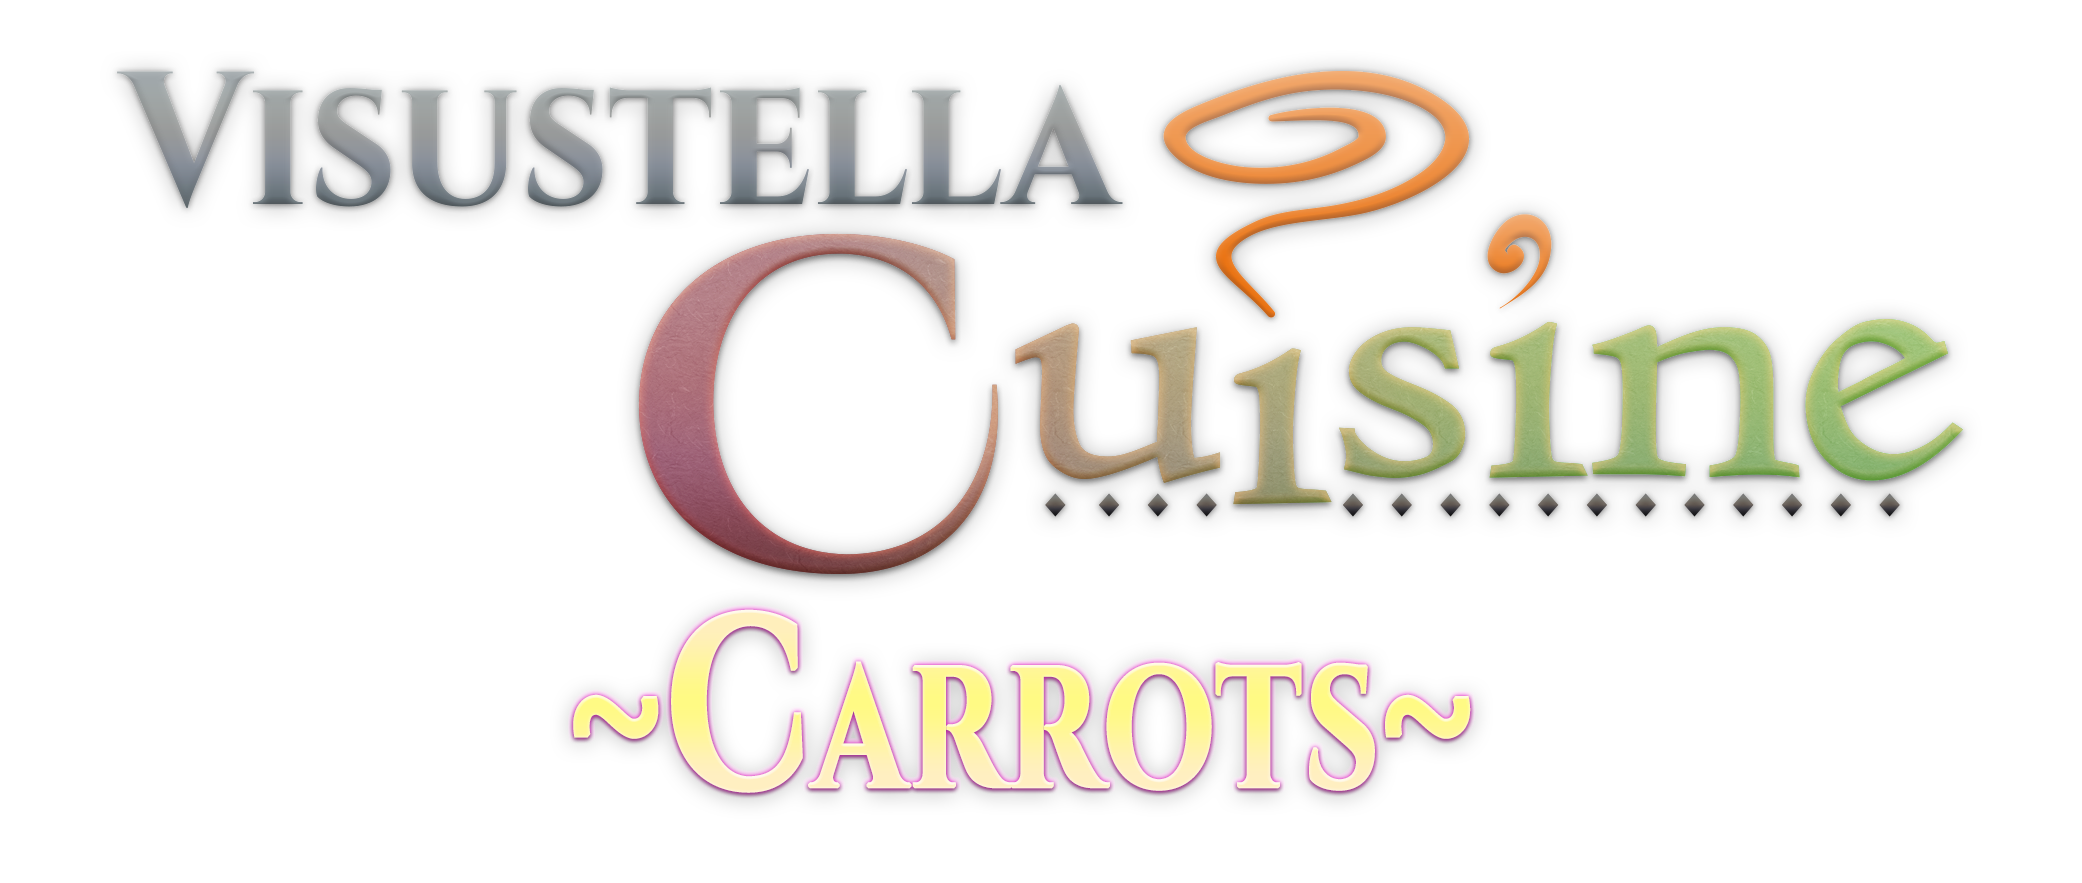 VisuStella Cuisine: Carrots